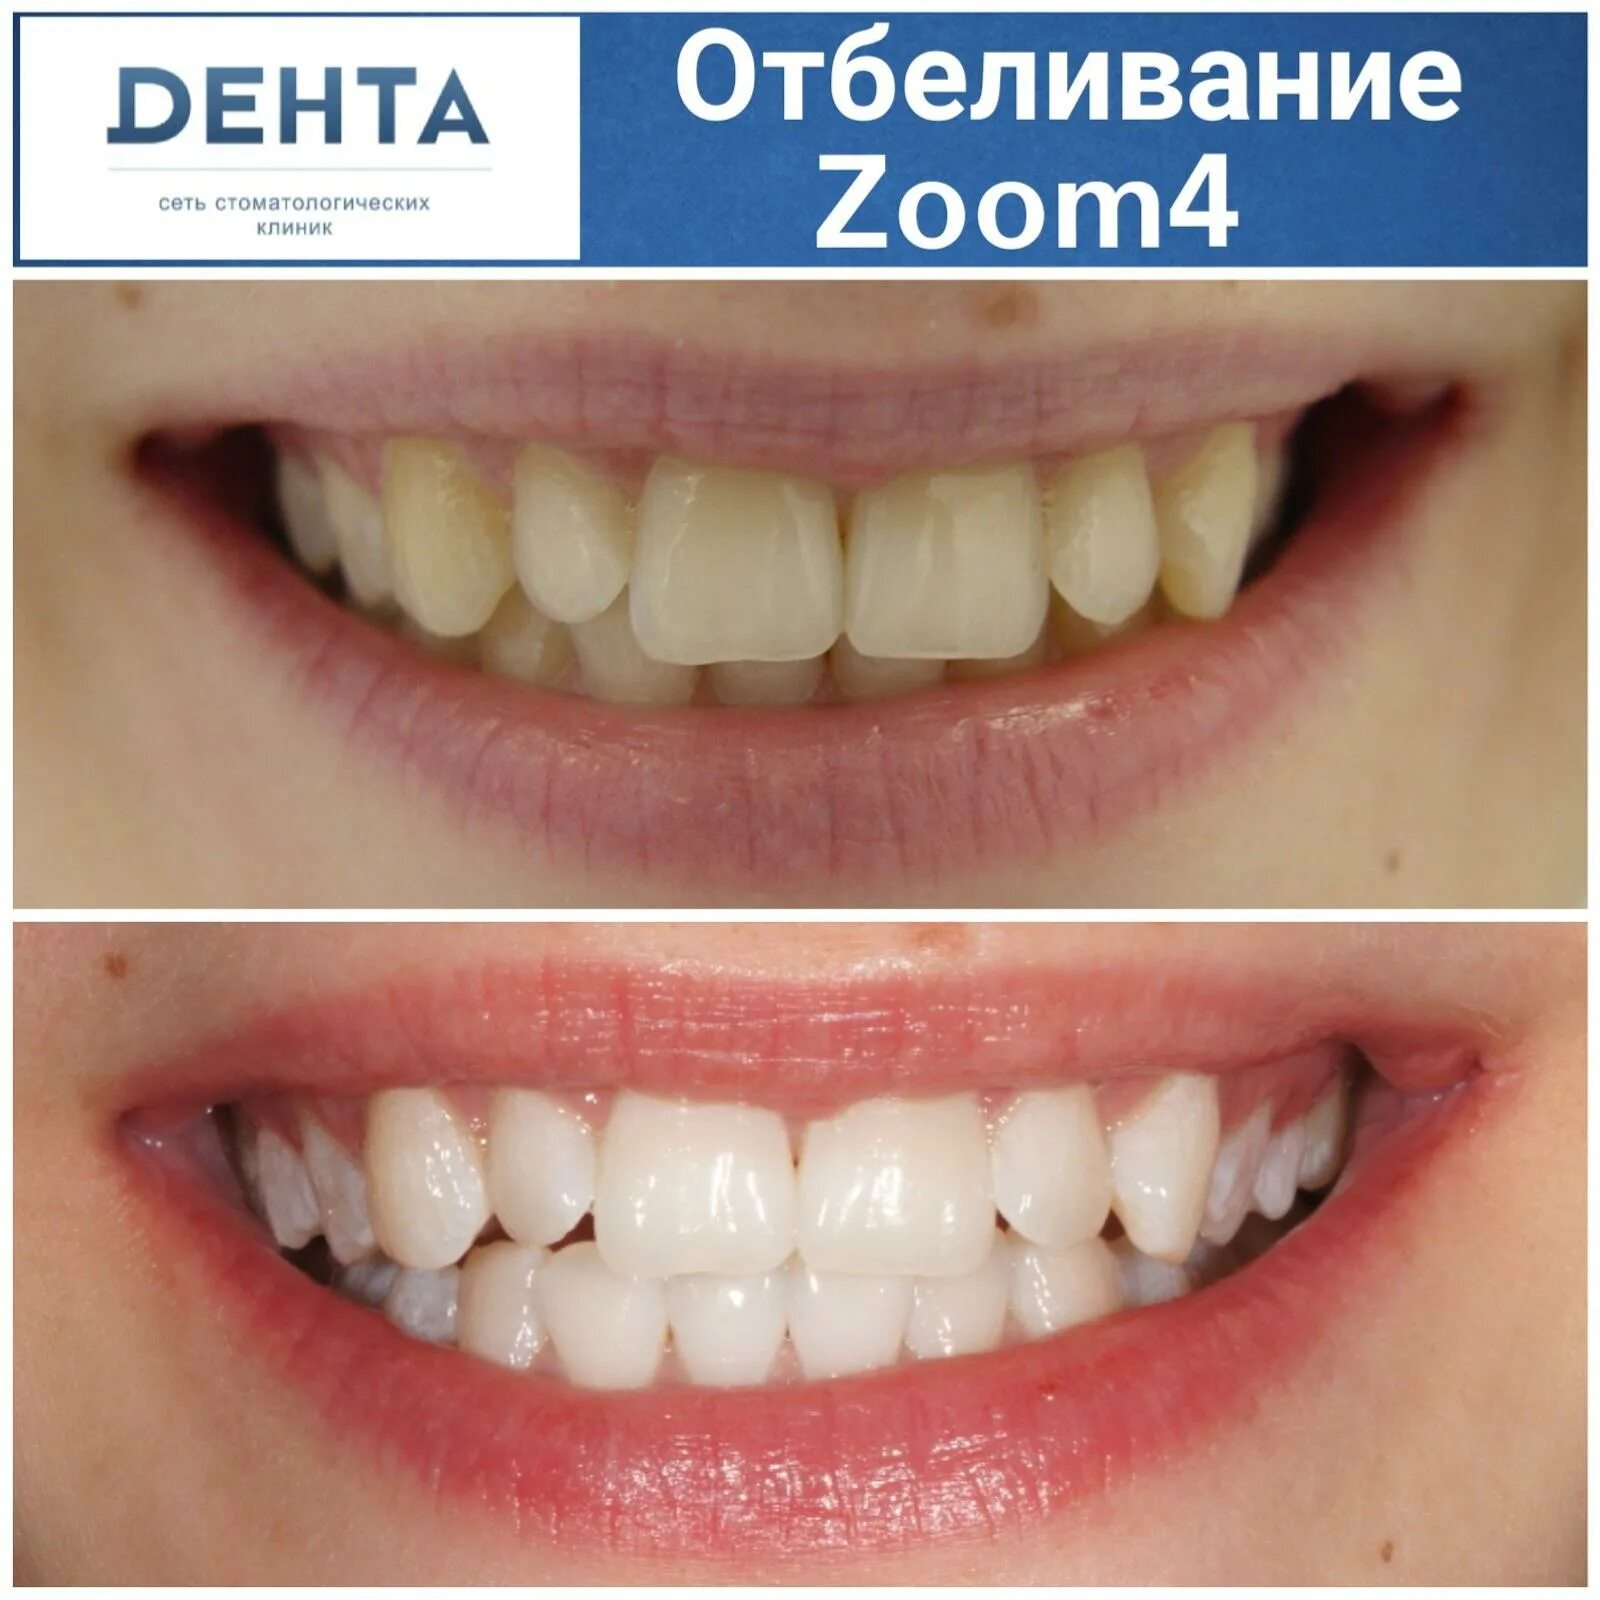 Отбеливание зубов результат. Зубы до и после отбеливания.